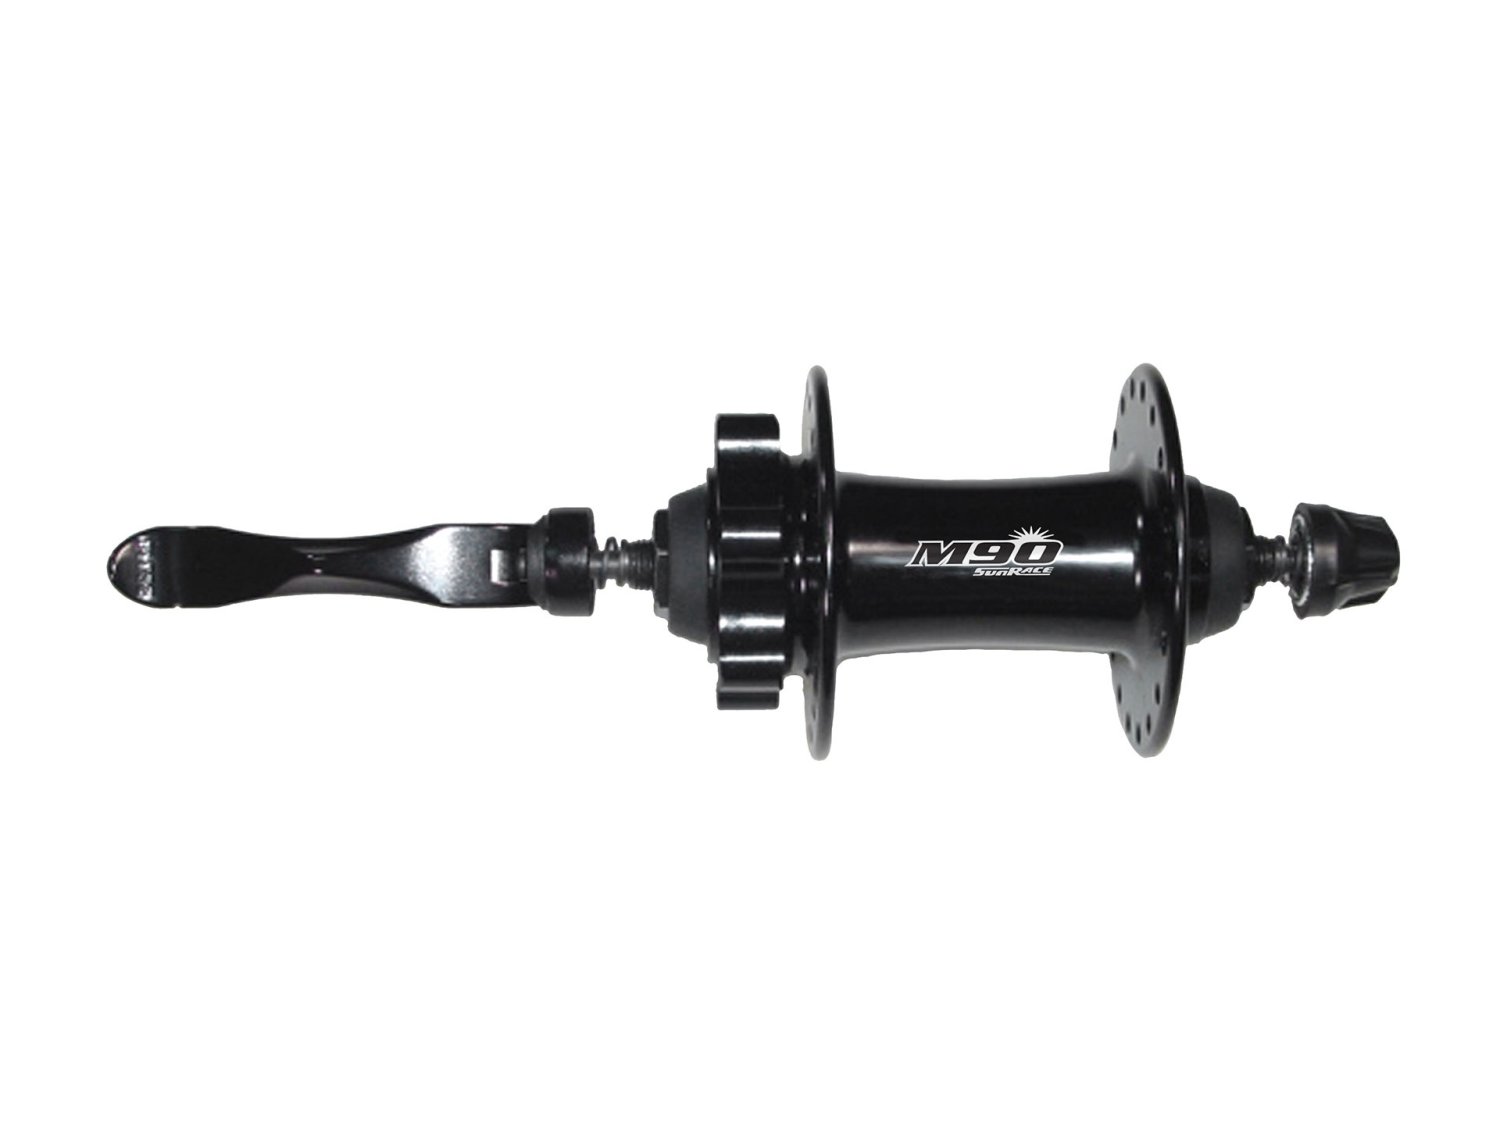 Втулка велосипедная SUNRACE HBM96.F0QS.DS1.BX M96, передняя, с эксцентриком, 32H, под диск, чёрный, 06-201509 втулка велосипедная joy tech fh431 передняя 36н с эксцентриком чёрная